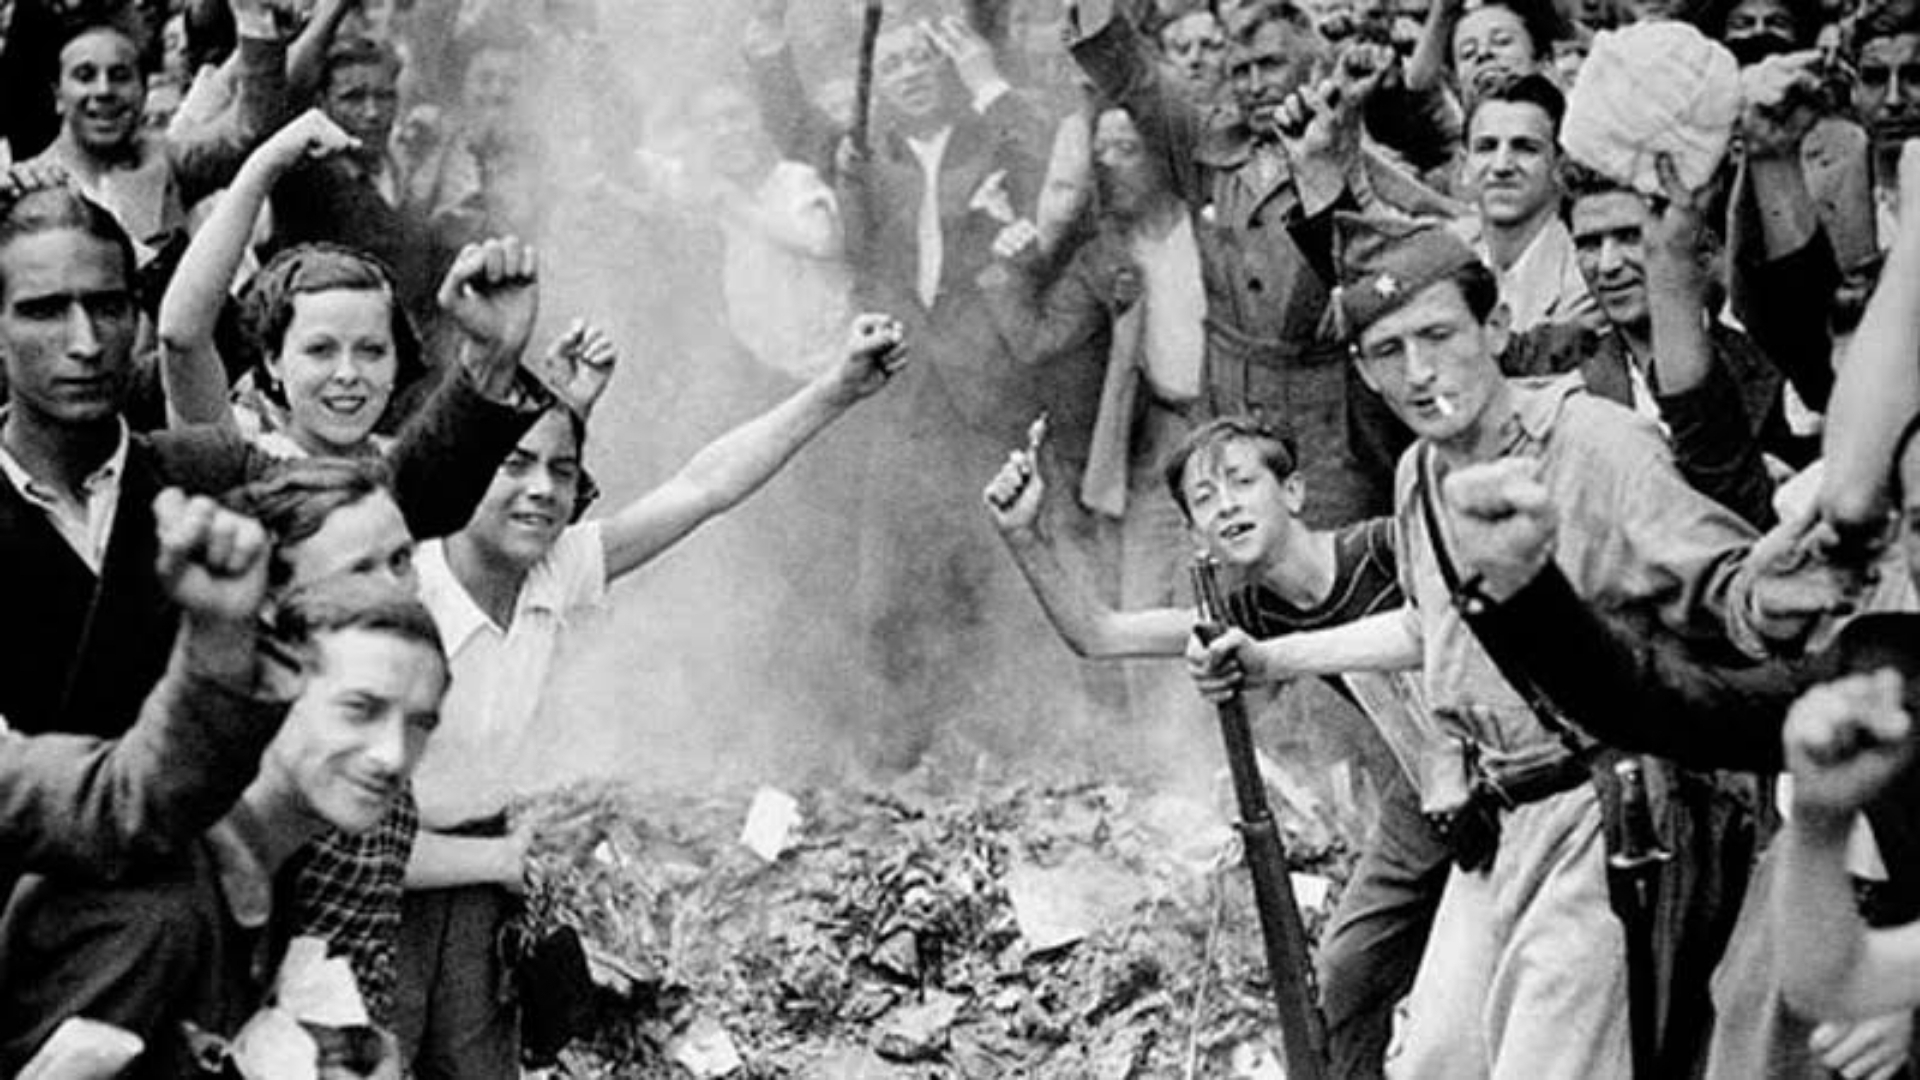 La revolución que prendió Barcelona en llamas